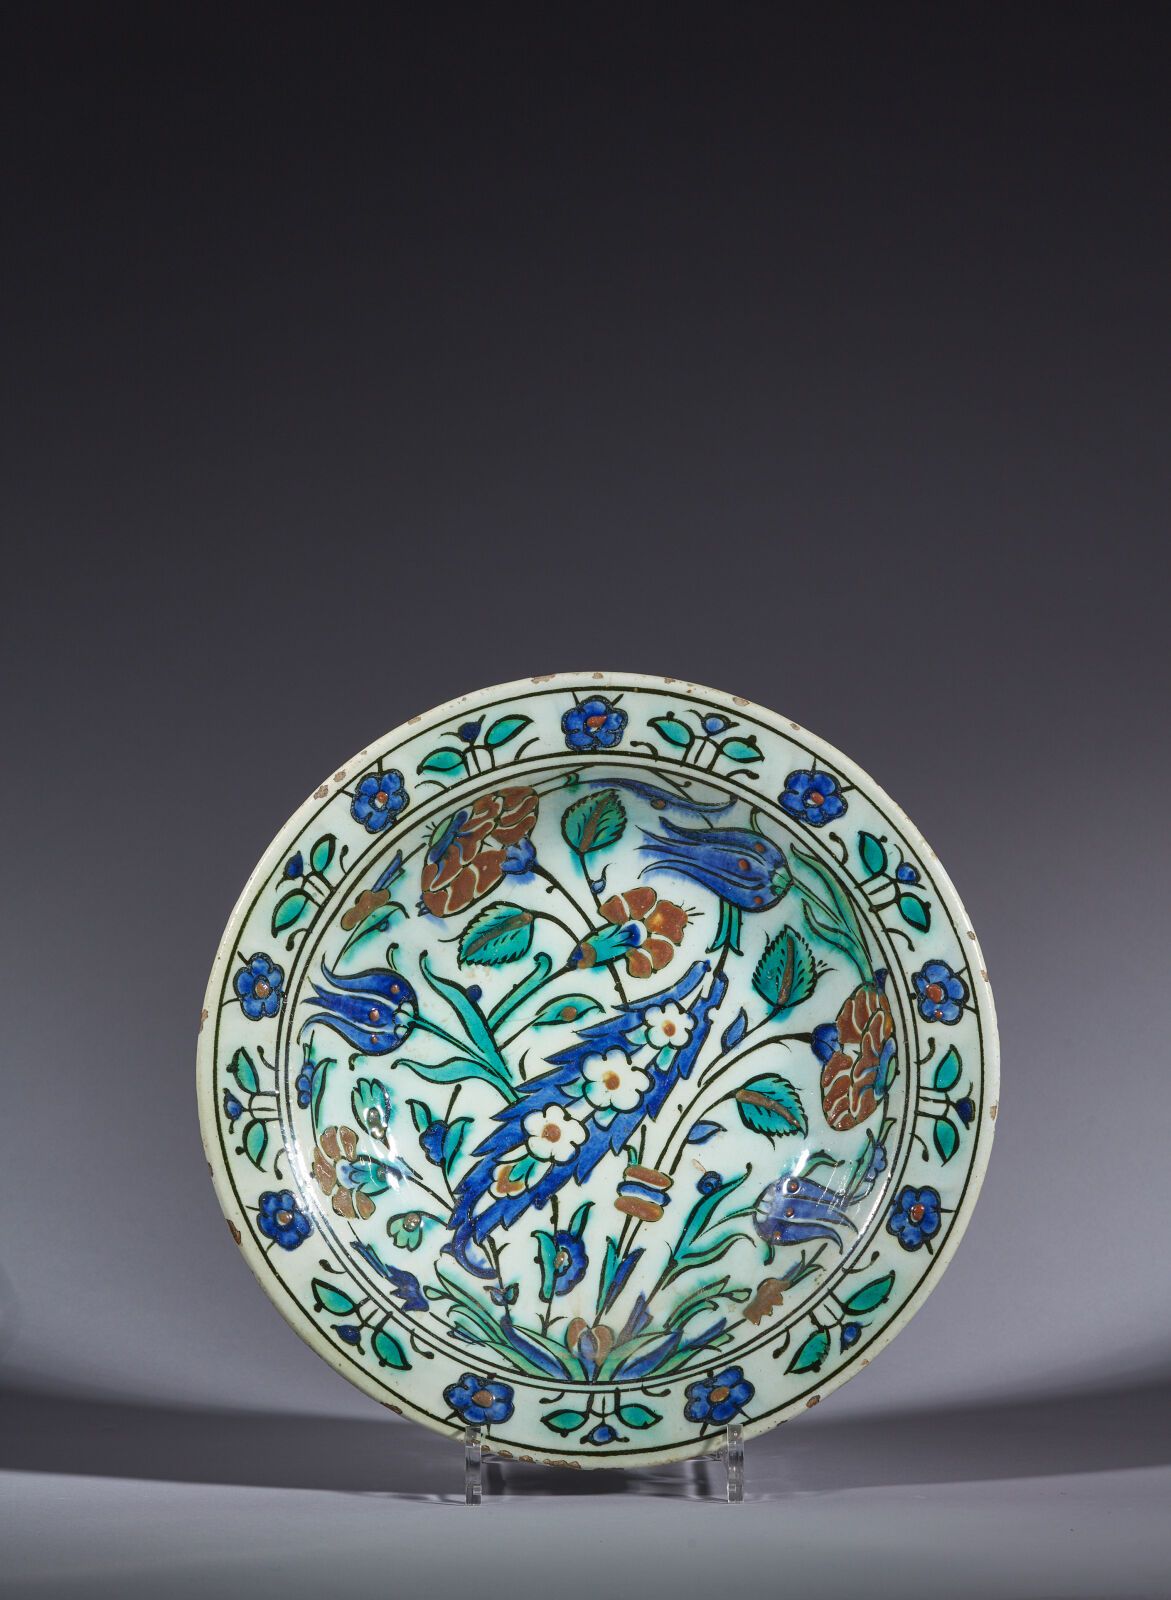 Null 奥斯曼土耳其，伊兹尼克，16 世纪末 17 世纪初
带大 "萨兹 "棕榈的盘子
带有多色彩绘装饰的硅质陶瓷盘。密集的花卉图案点缀着一个 "萨兹 "棕榈&hellip;